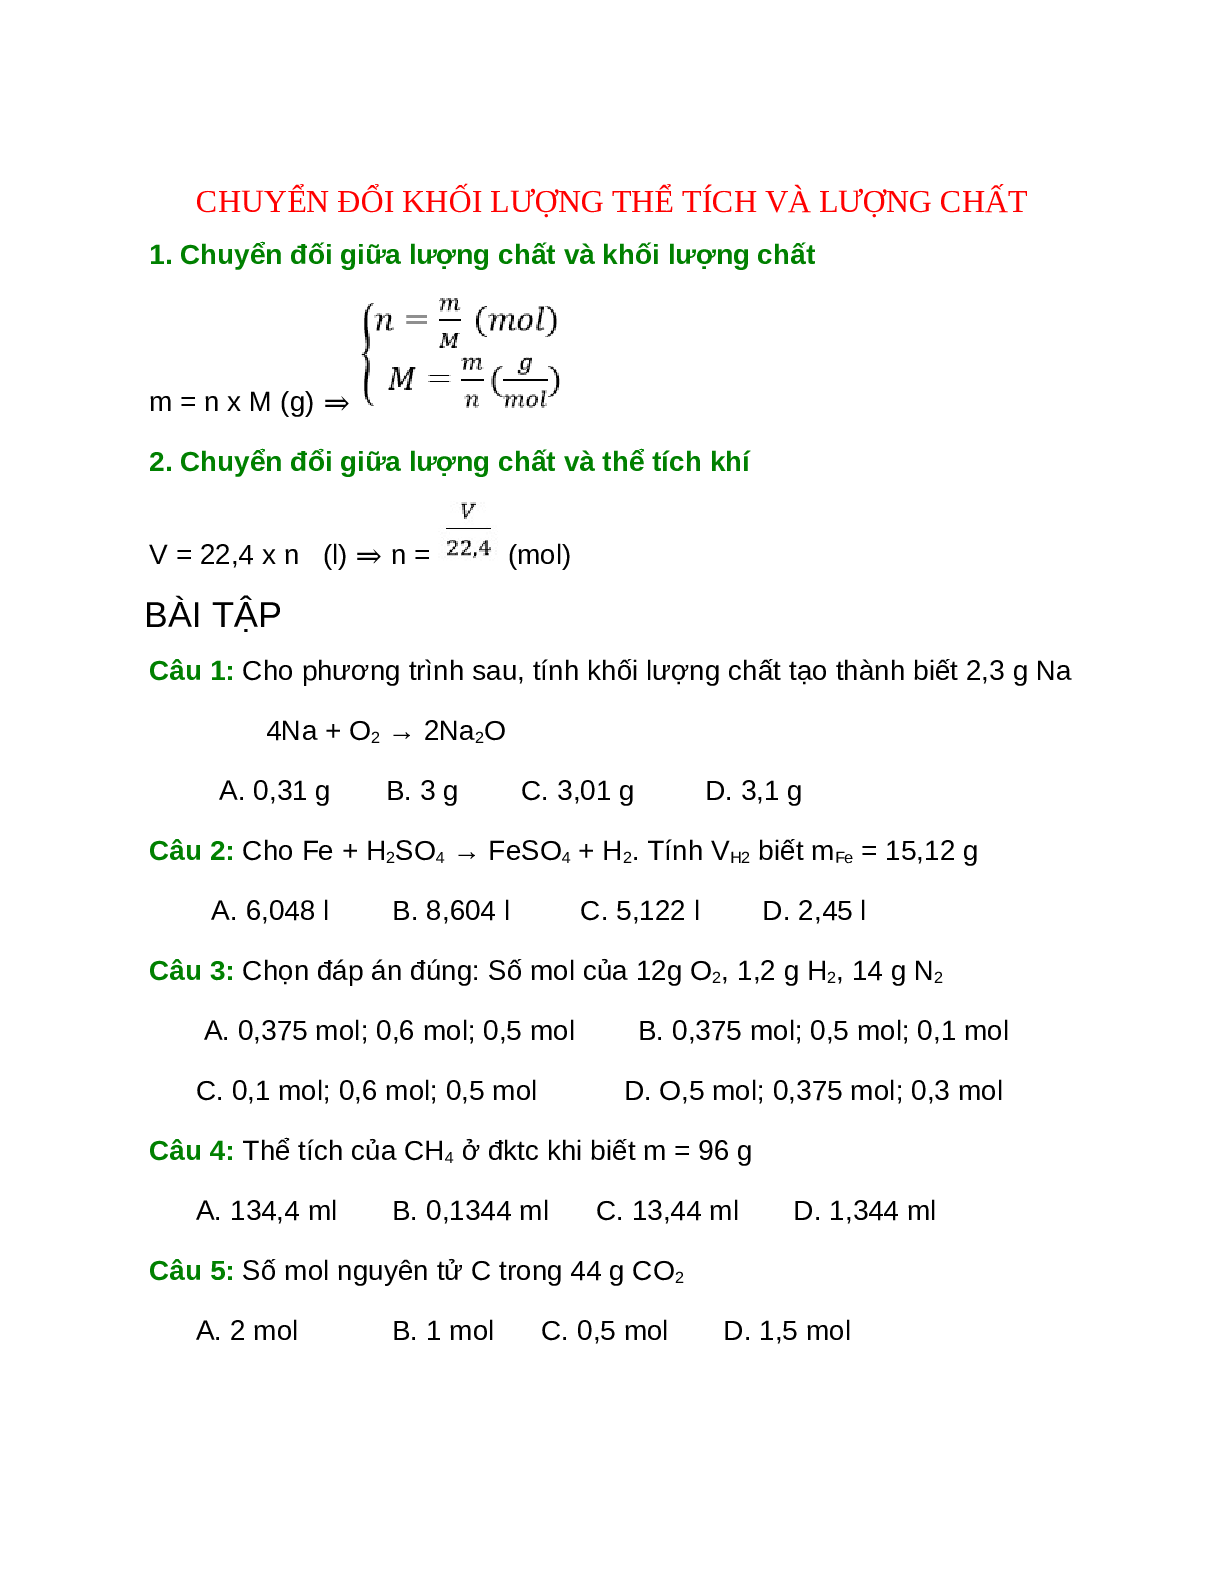 Lý thuyết, bài tập về Chuyển đổi khối lượng thể tích và lượng chất (trang 1)